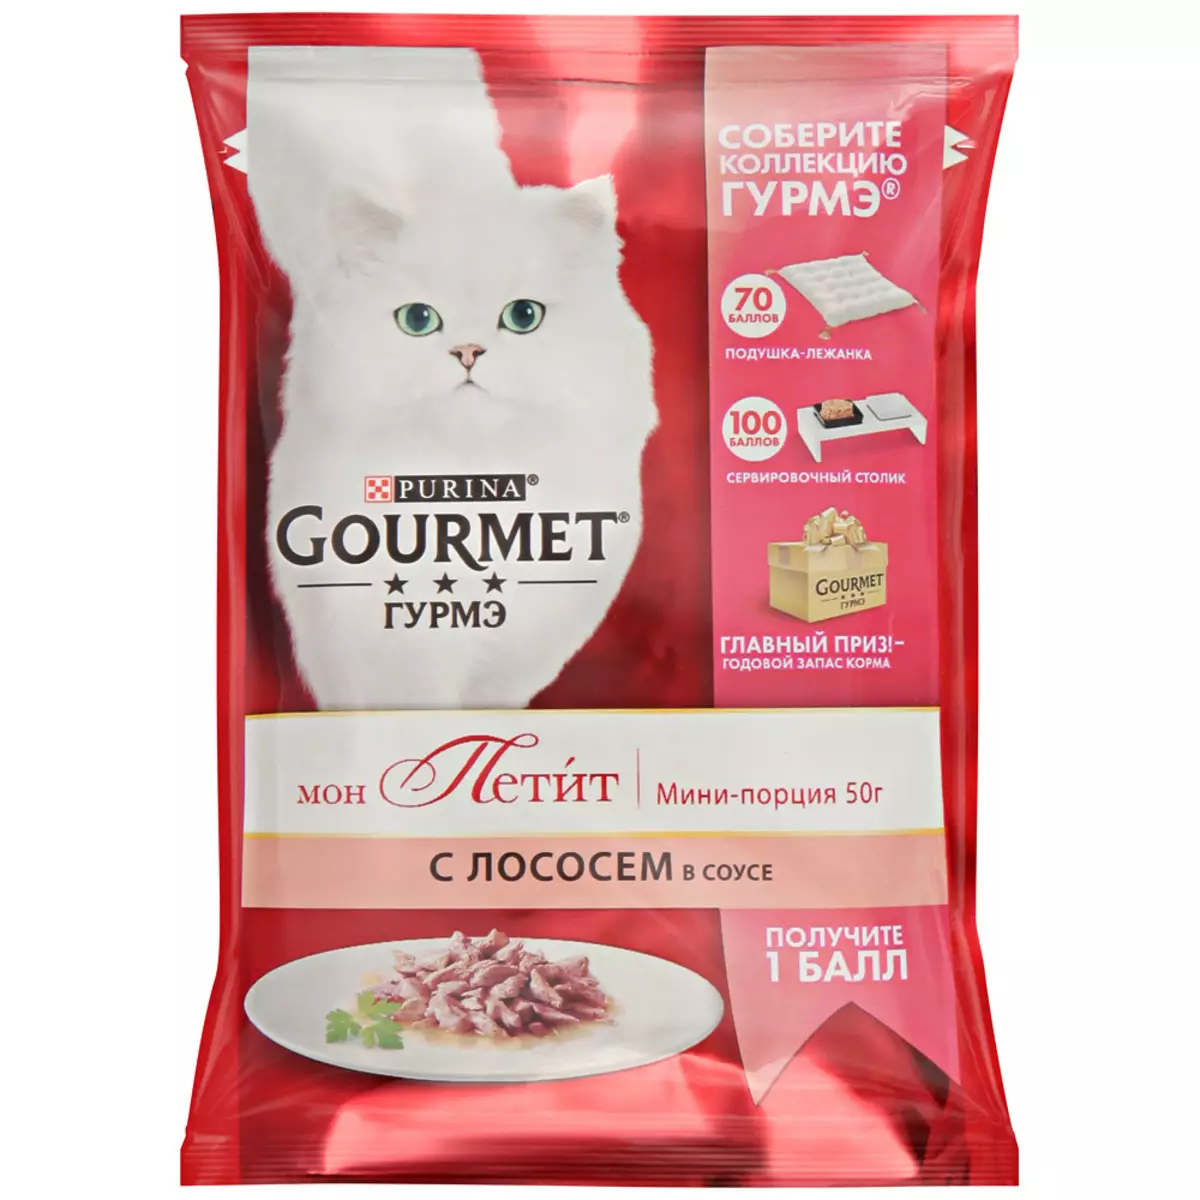 Gourmet: Cat Feed ug Purina Kittens, basa nga mga pates ug uban pang mga feline de lata nga pagkaon, ilang komposisyon, mga review 22711_38